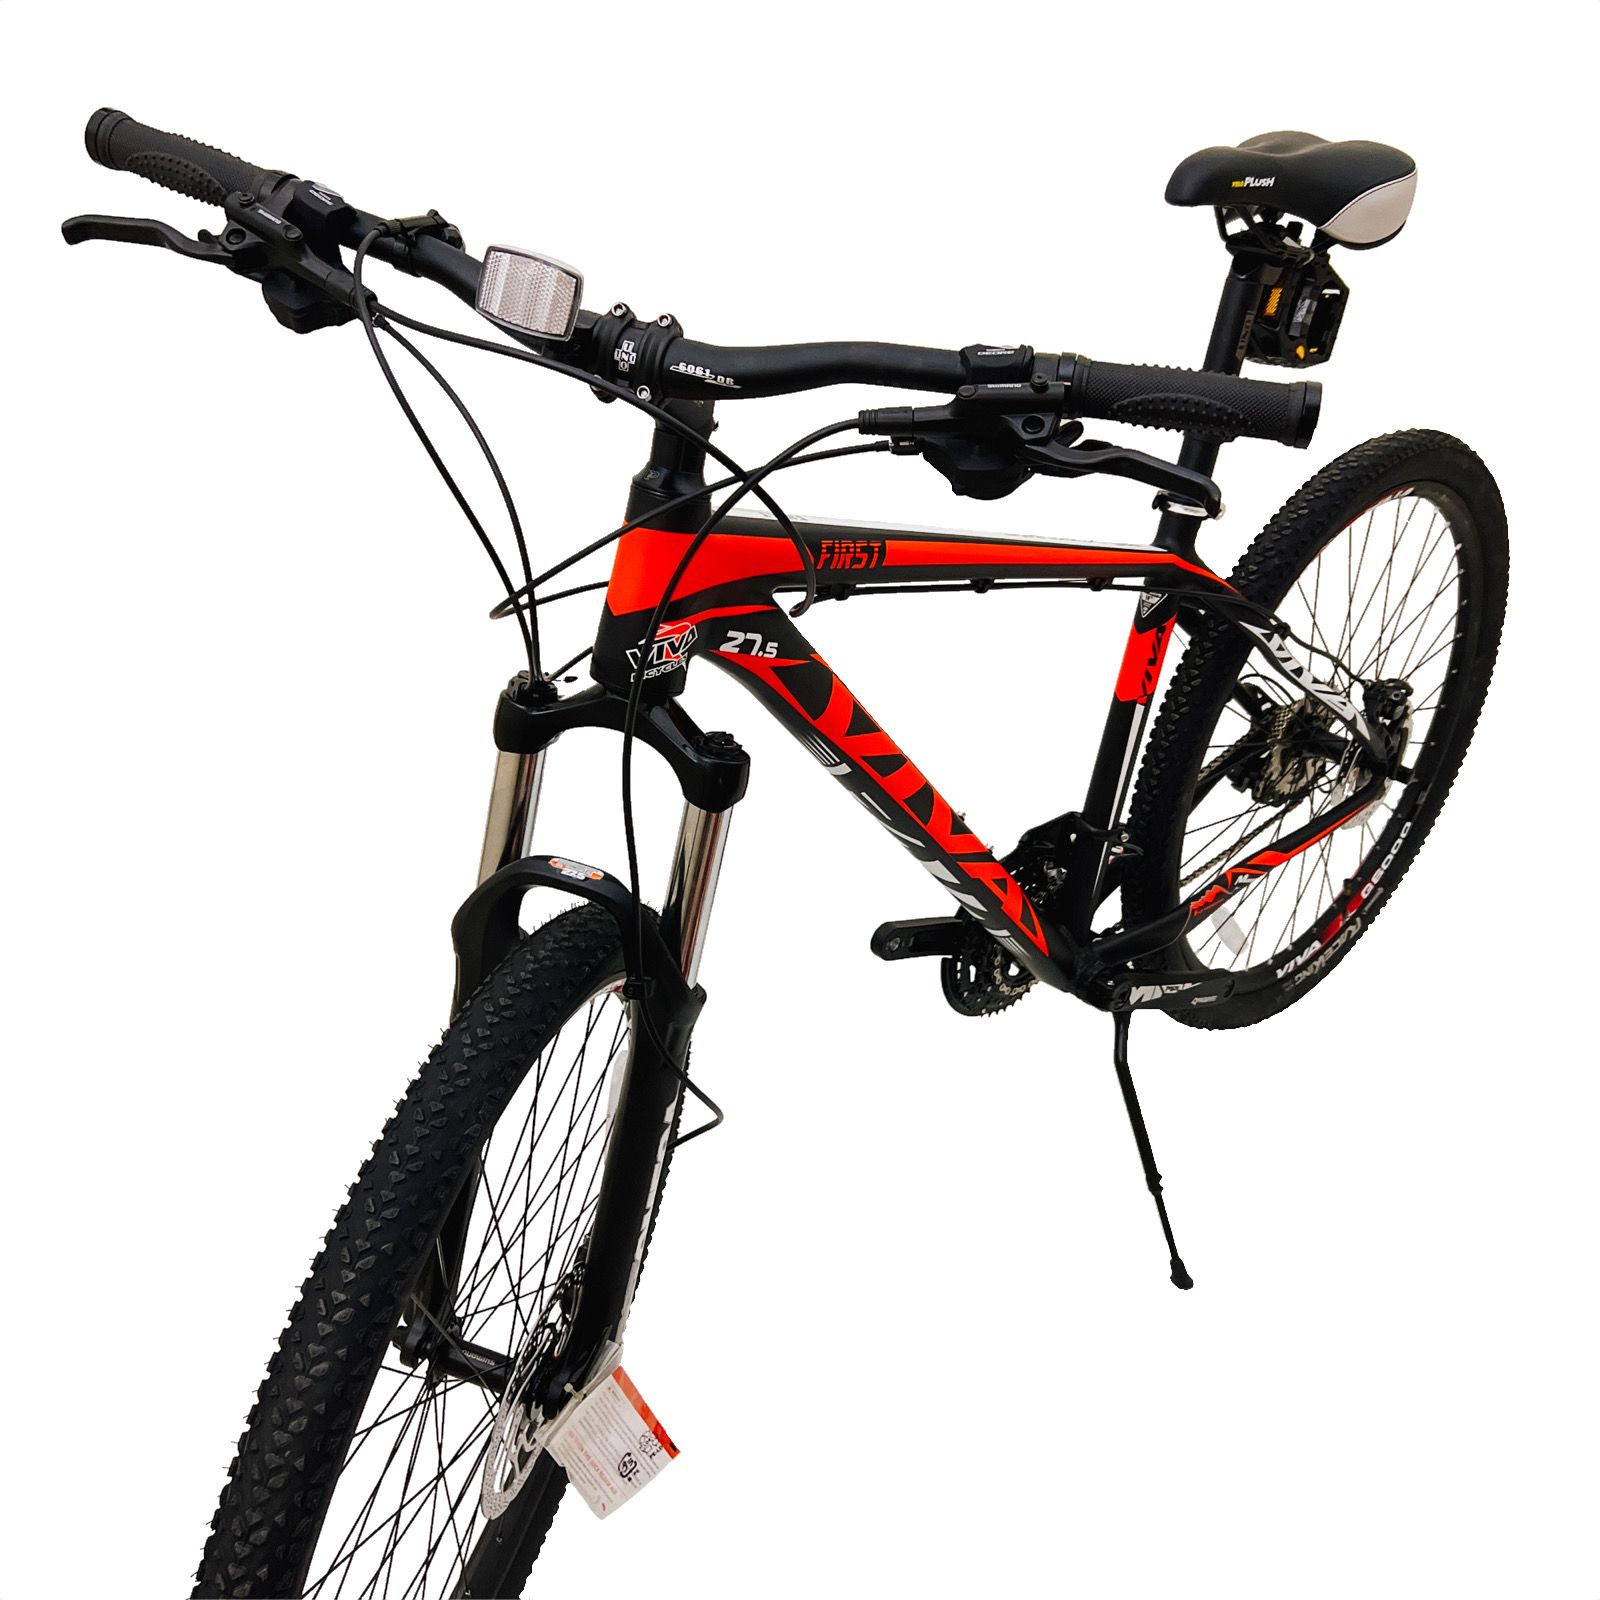 دوچرخه کوهستان ویوا مدل FIRST سایز 27.5 -  - 19